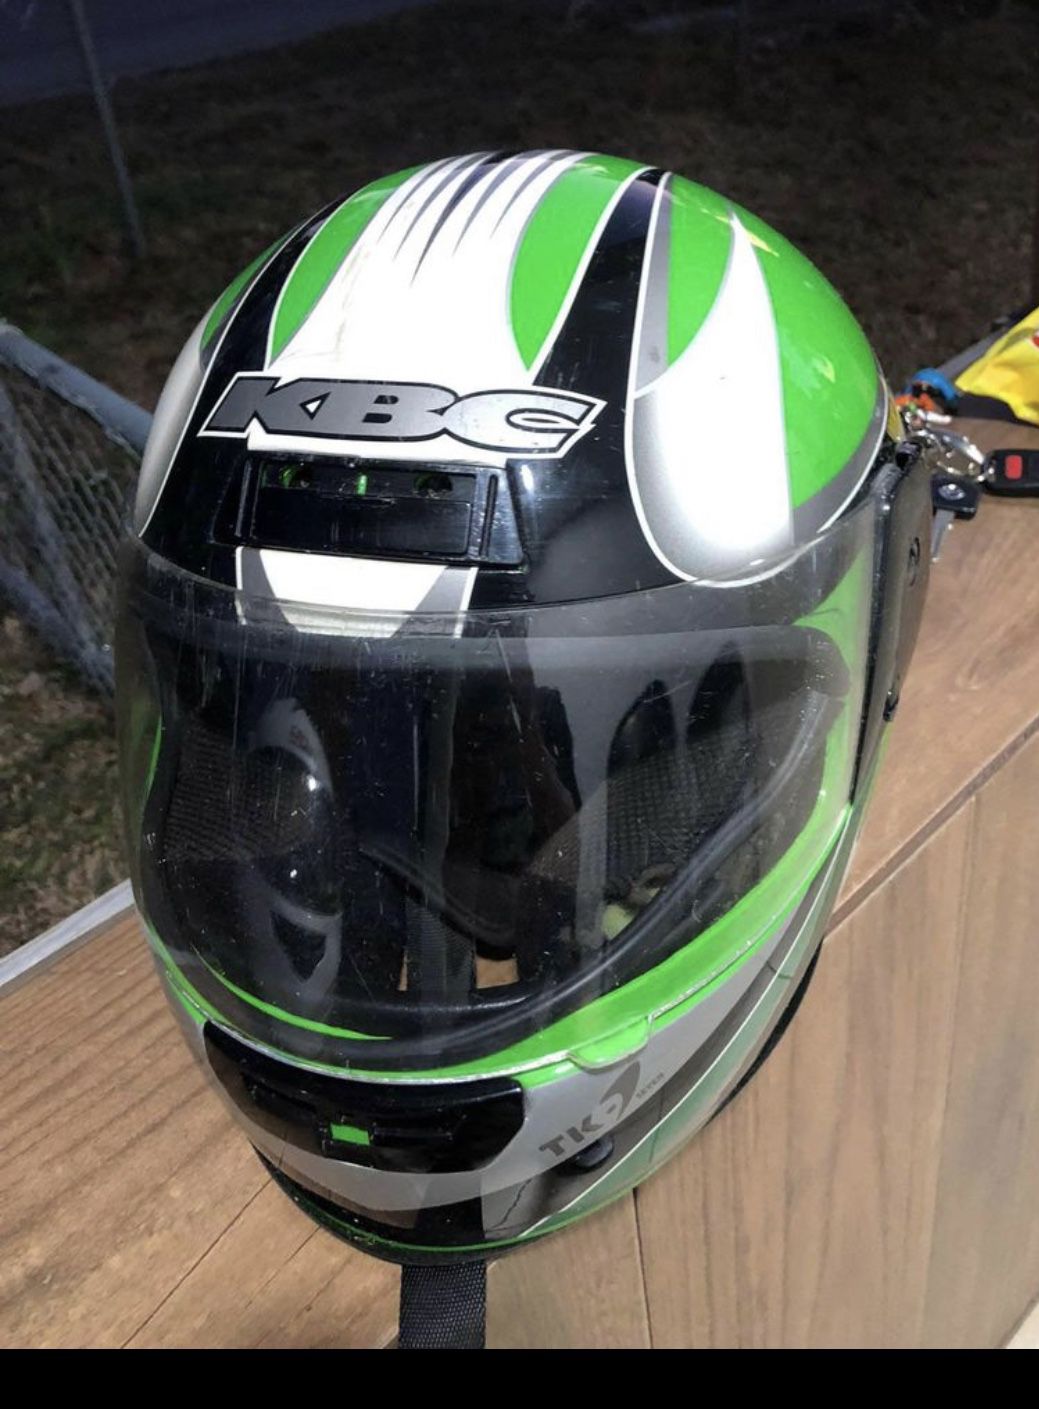 Fulmer women motorcycle helmet for Sale in Riverview, FL - OfferUp